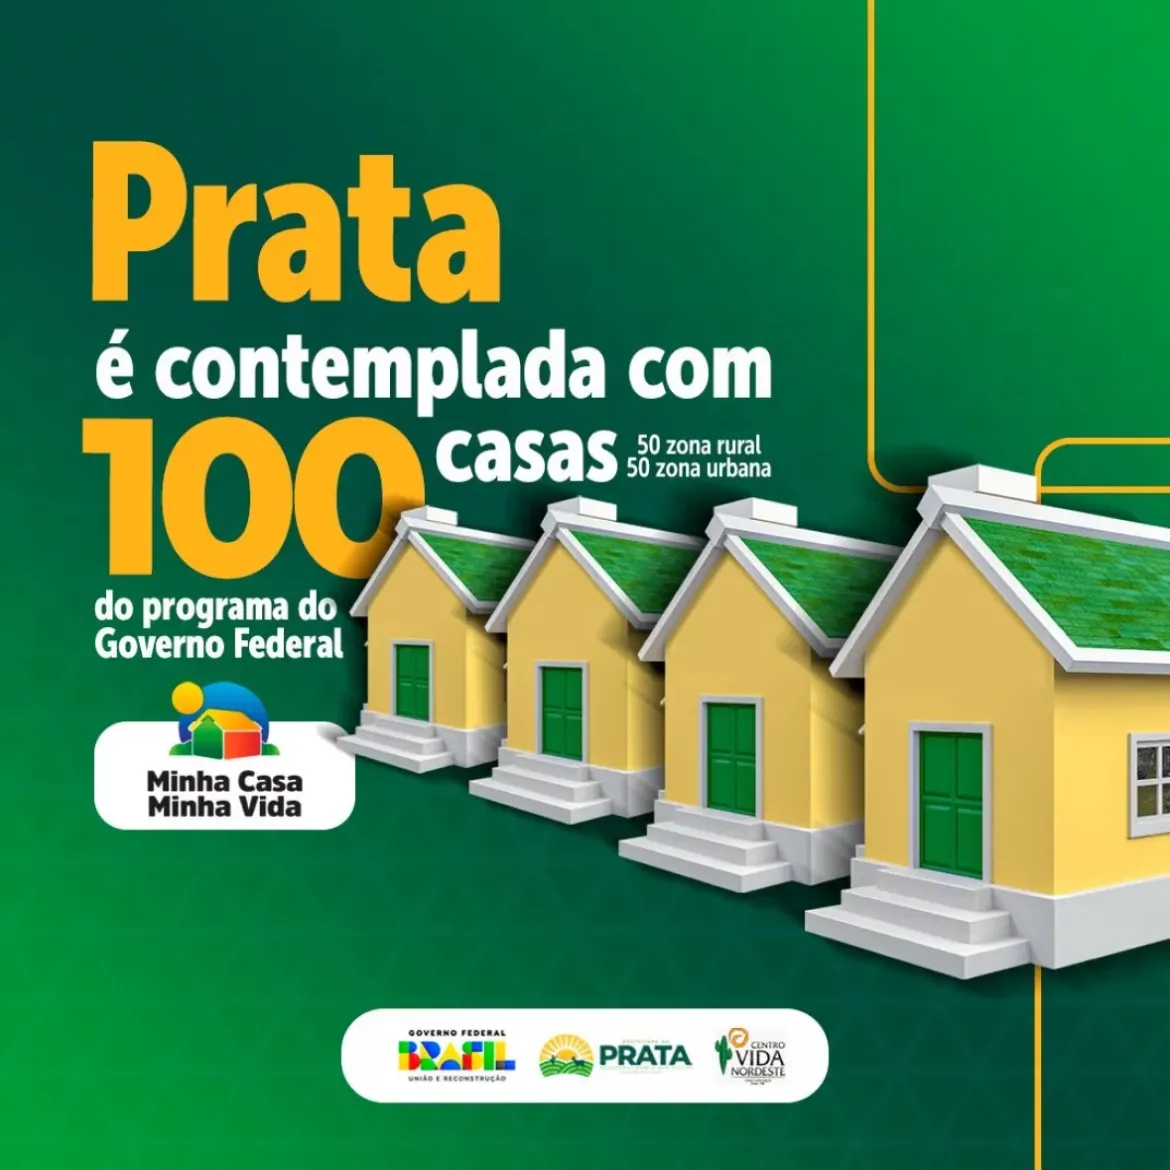 IMG_3377-768x432-1 Prefeito Genivaldo Tembório anuncia construção de 100 casas populares em Prata